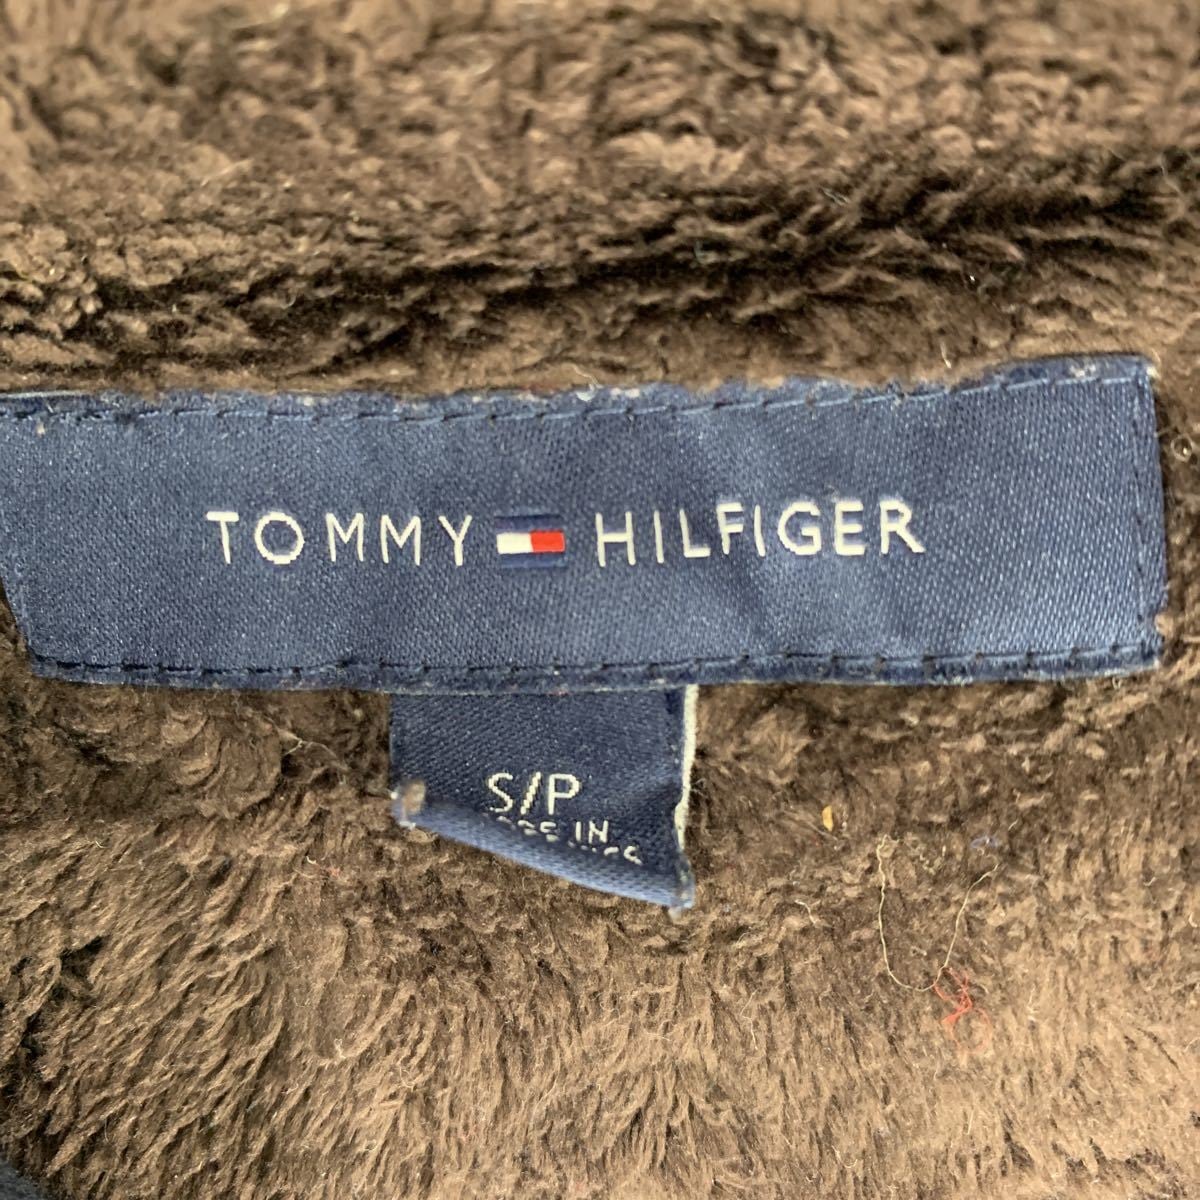 TOMMY HILFIGER ジップアップジャケット Sサイズ トミーヒルフィガー